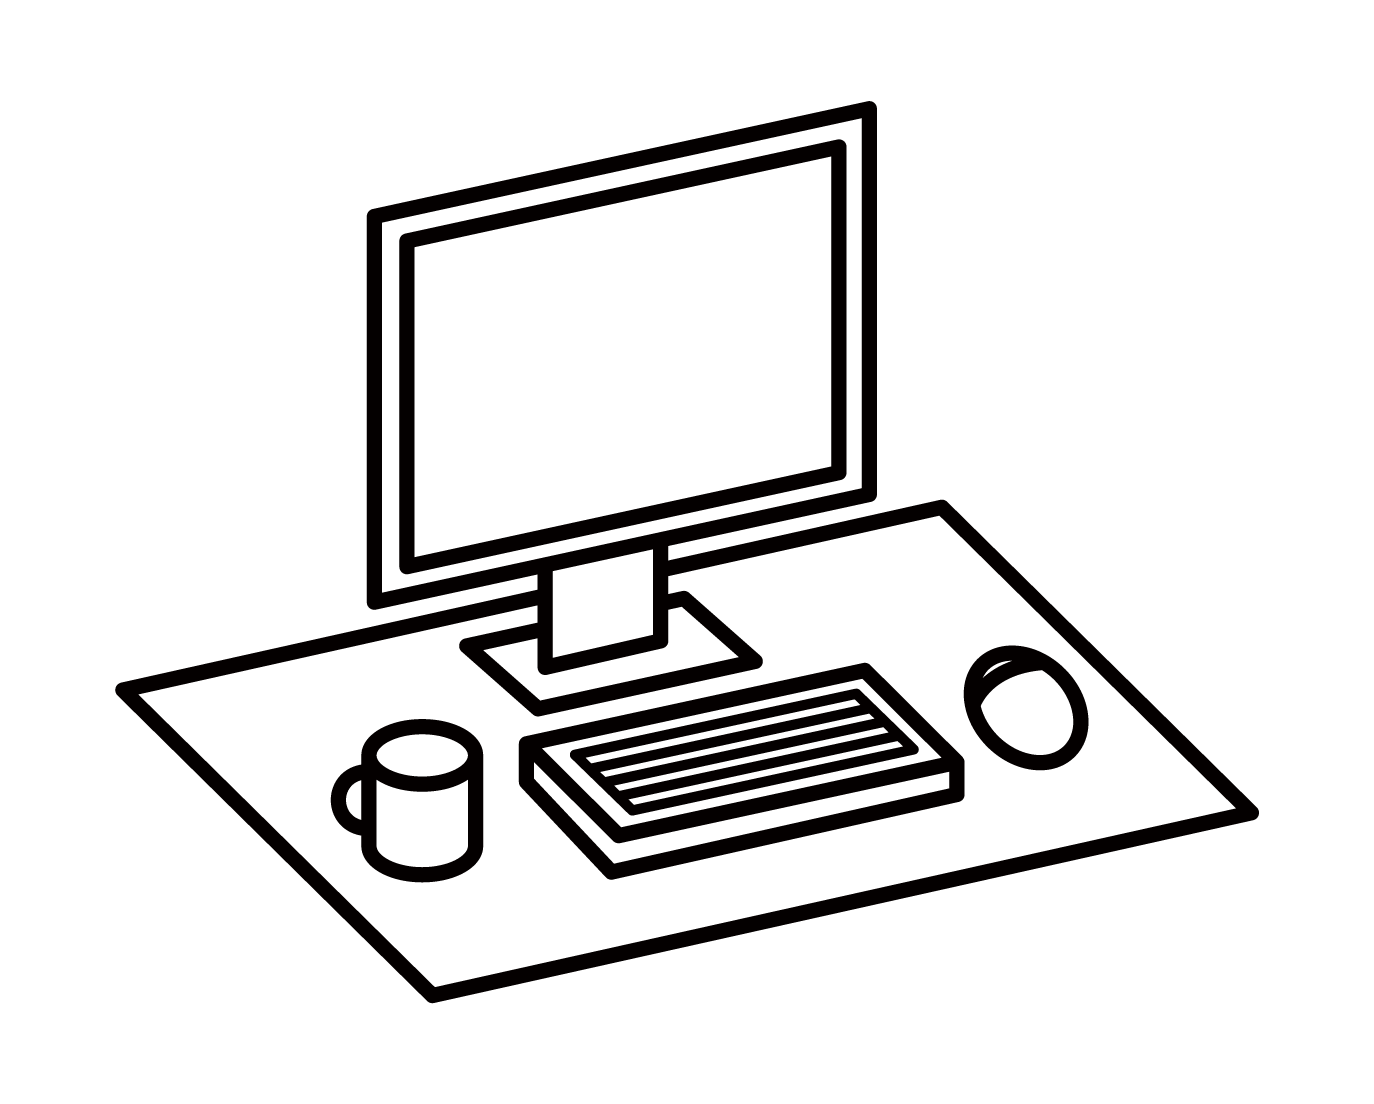 컴퓨터 책상과 업무용 책상의 그림